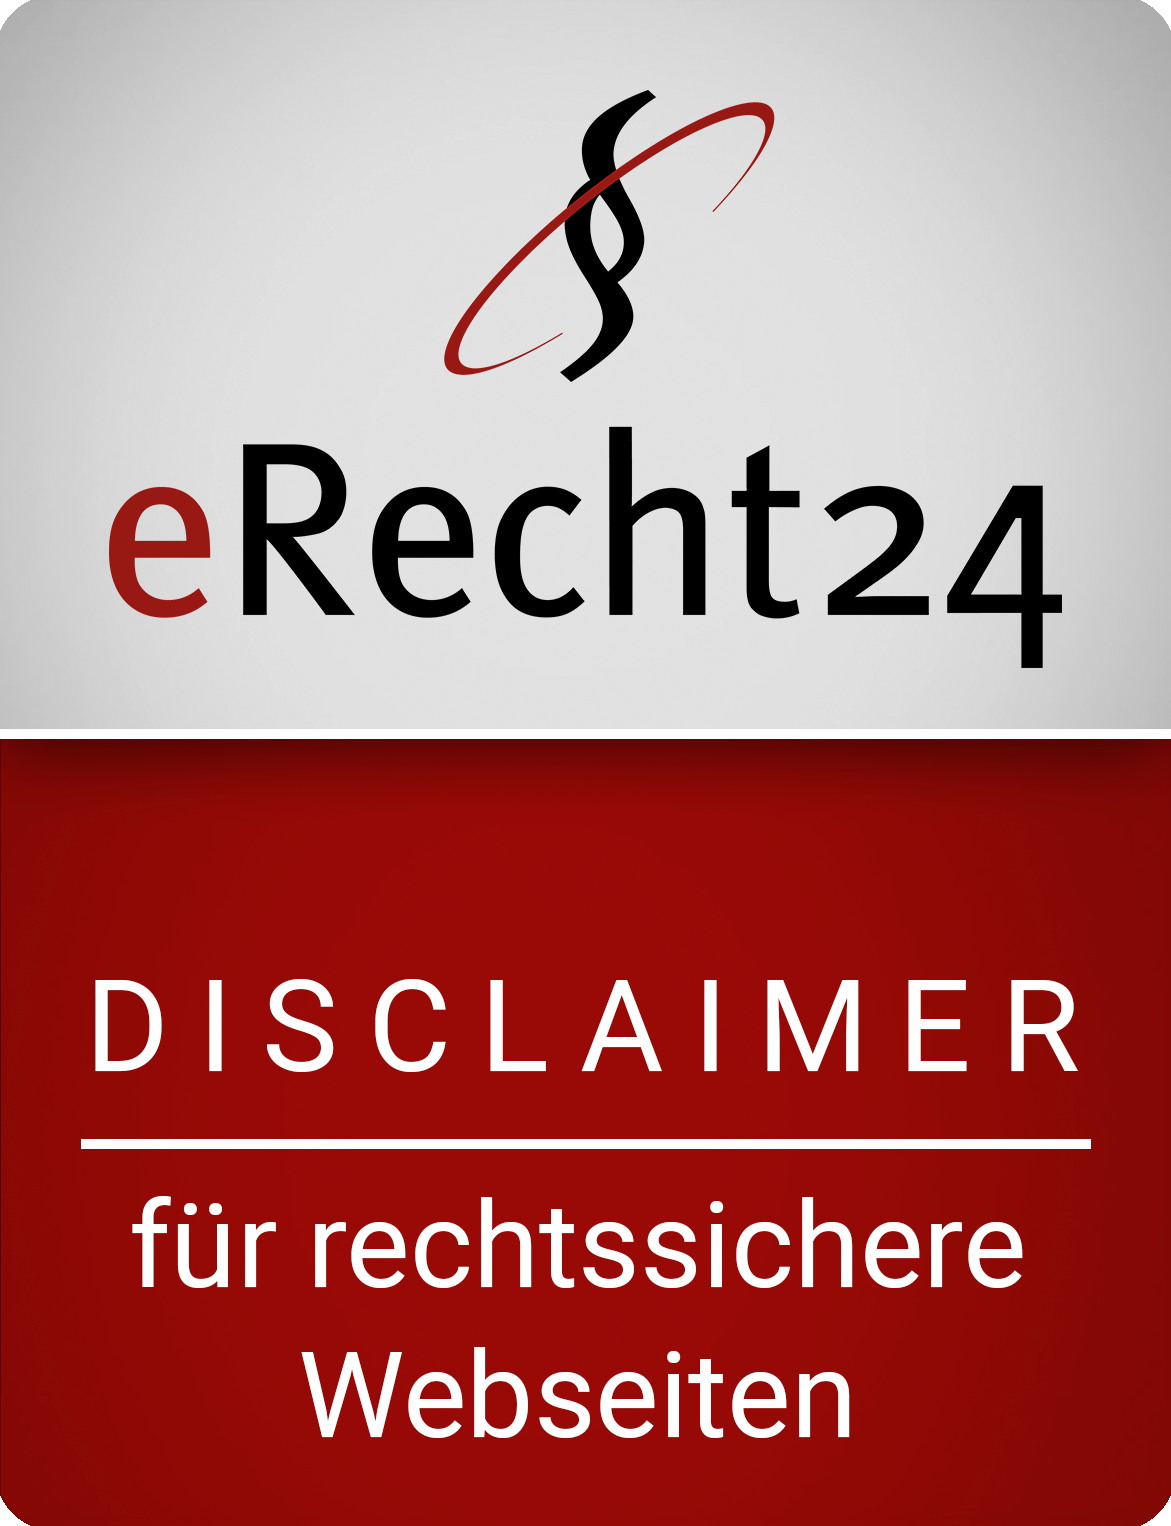 erecht24-siegel-disclaimer-rot-gross